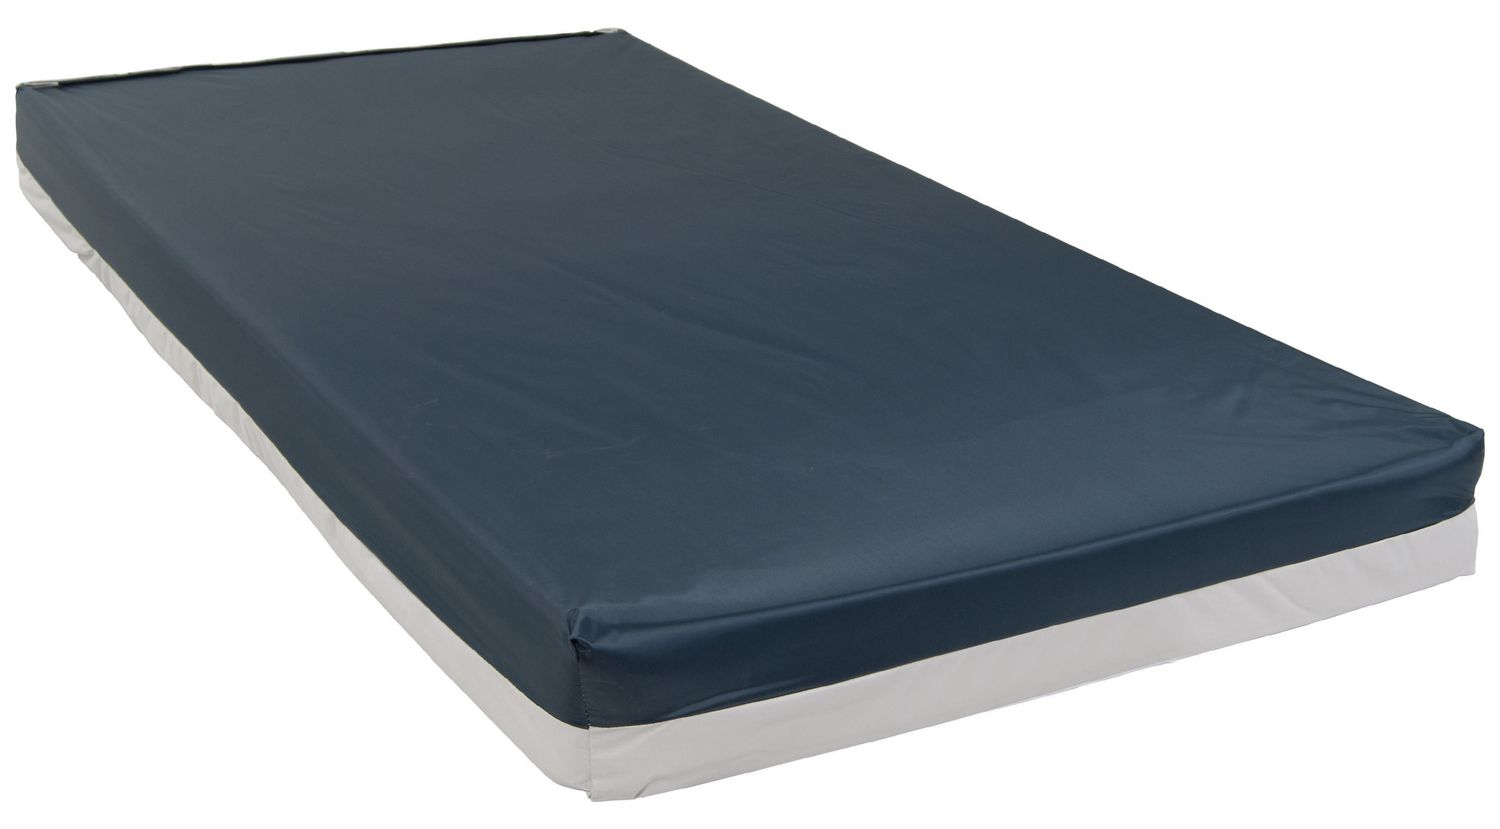 54 inch wide mattress